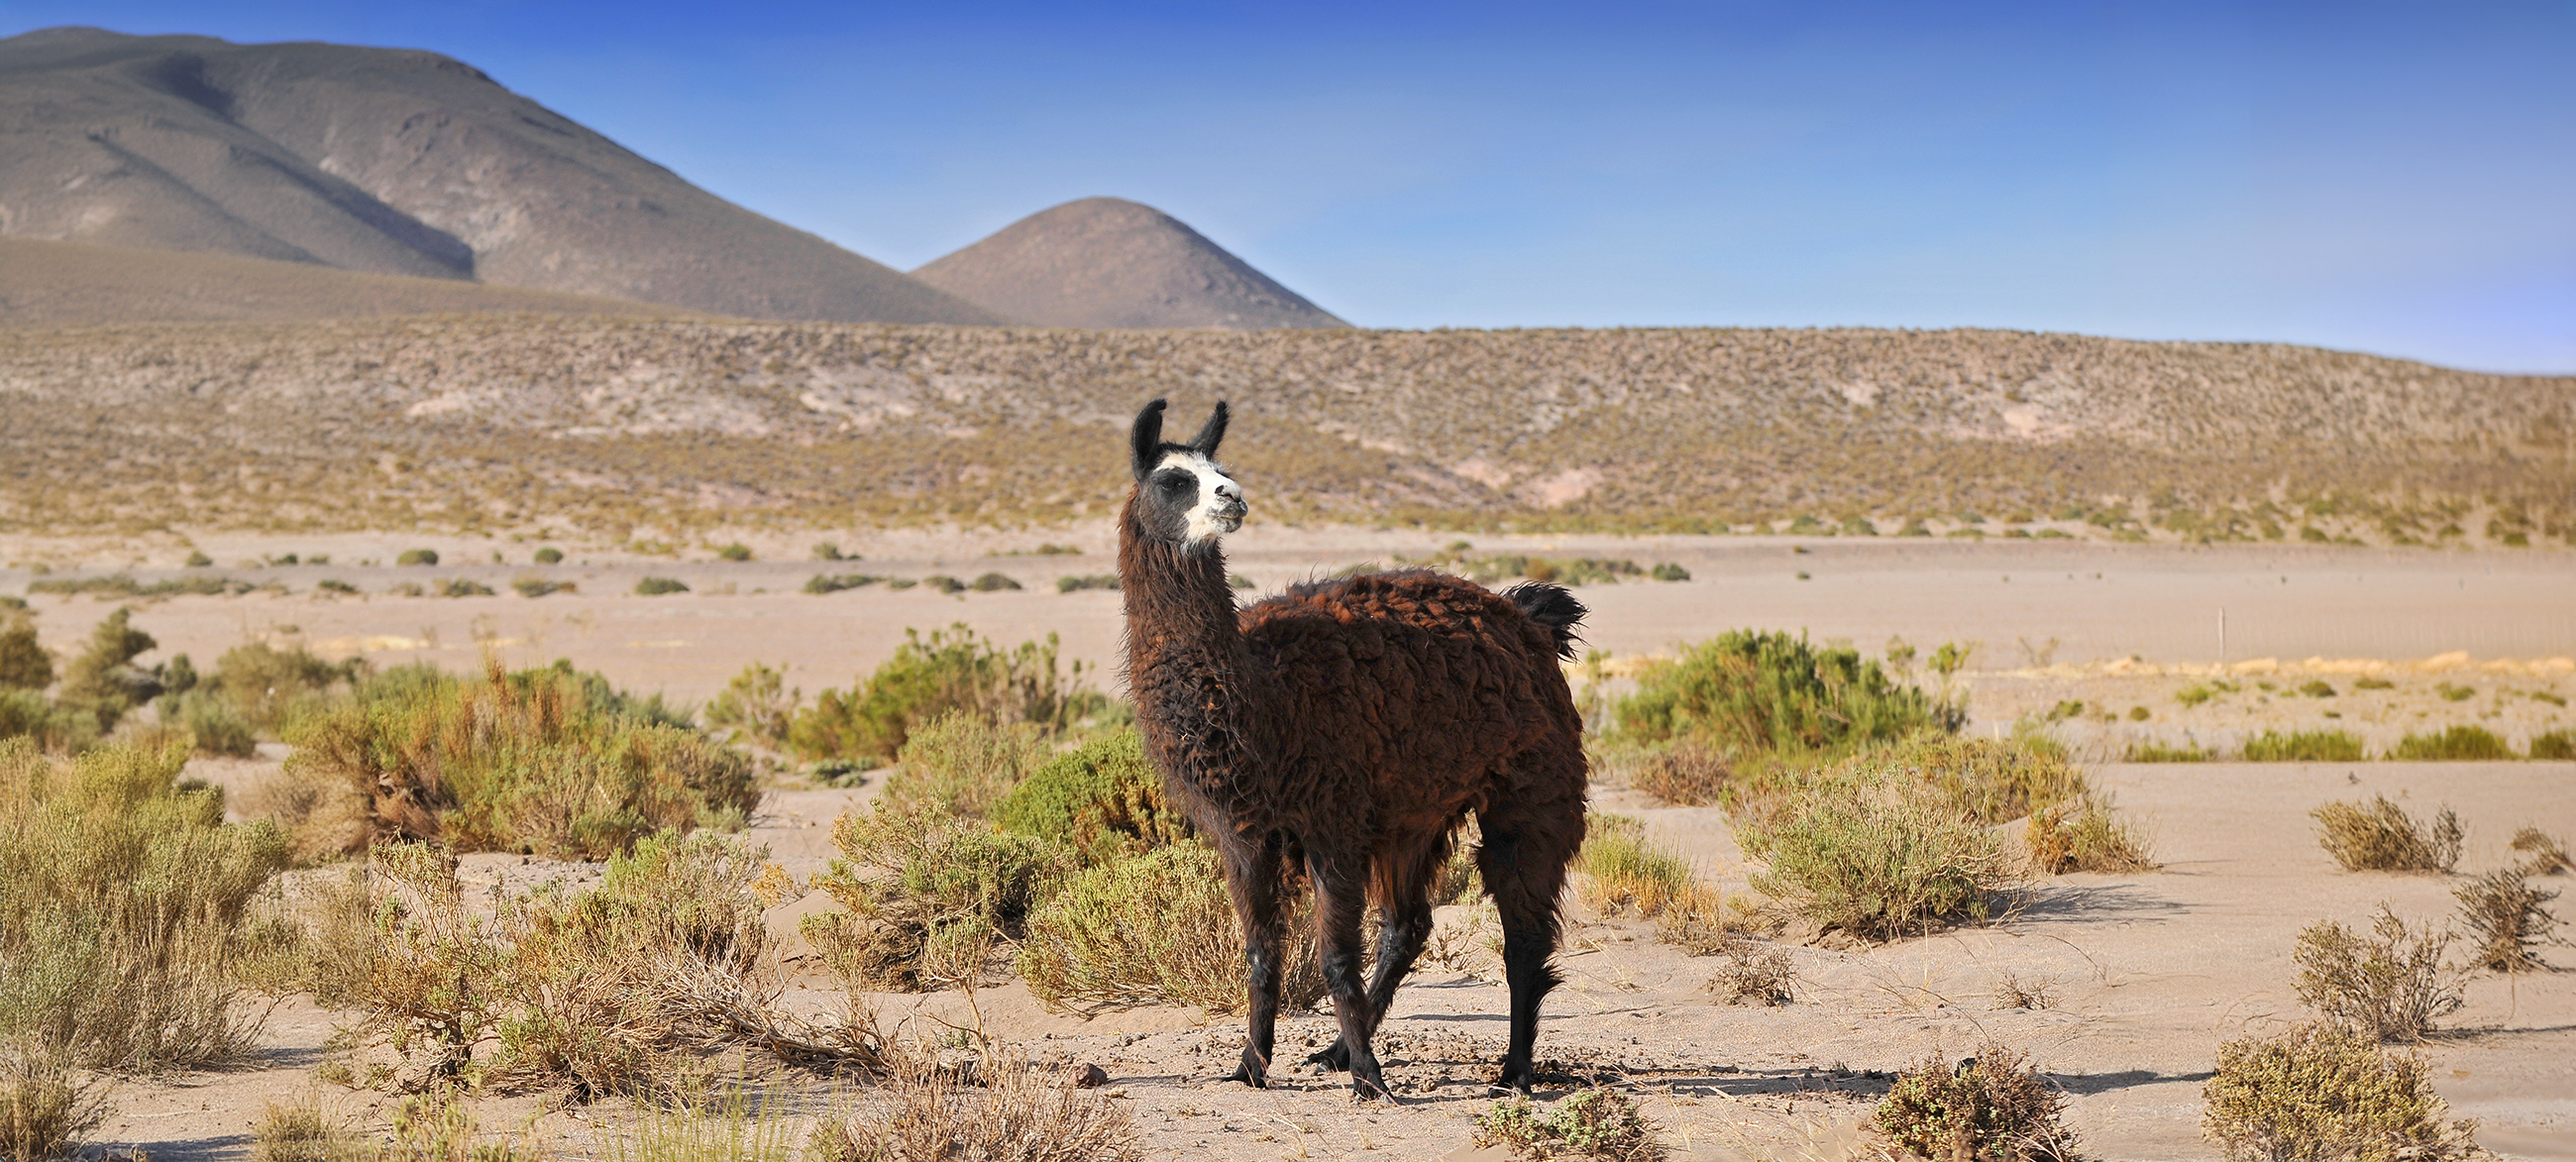 Un lama photographié en Bolivie. © GISTEL, Adobe Stock   